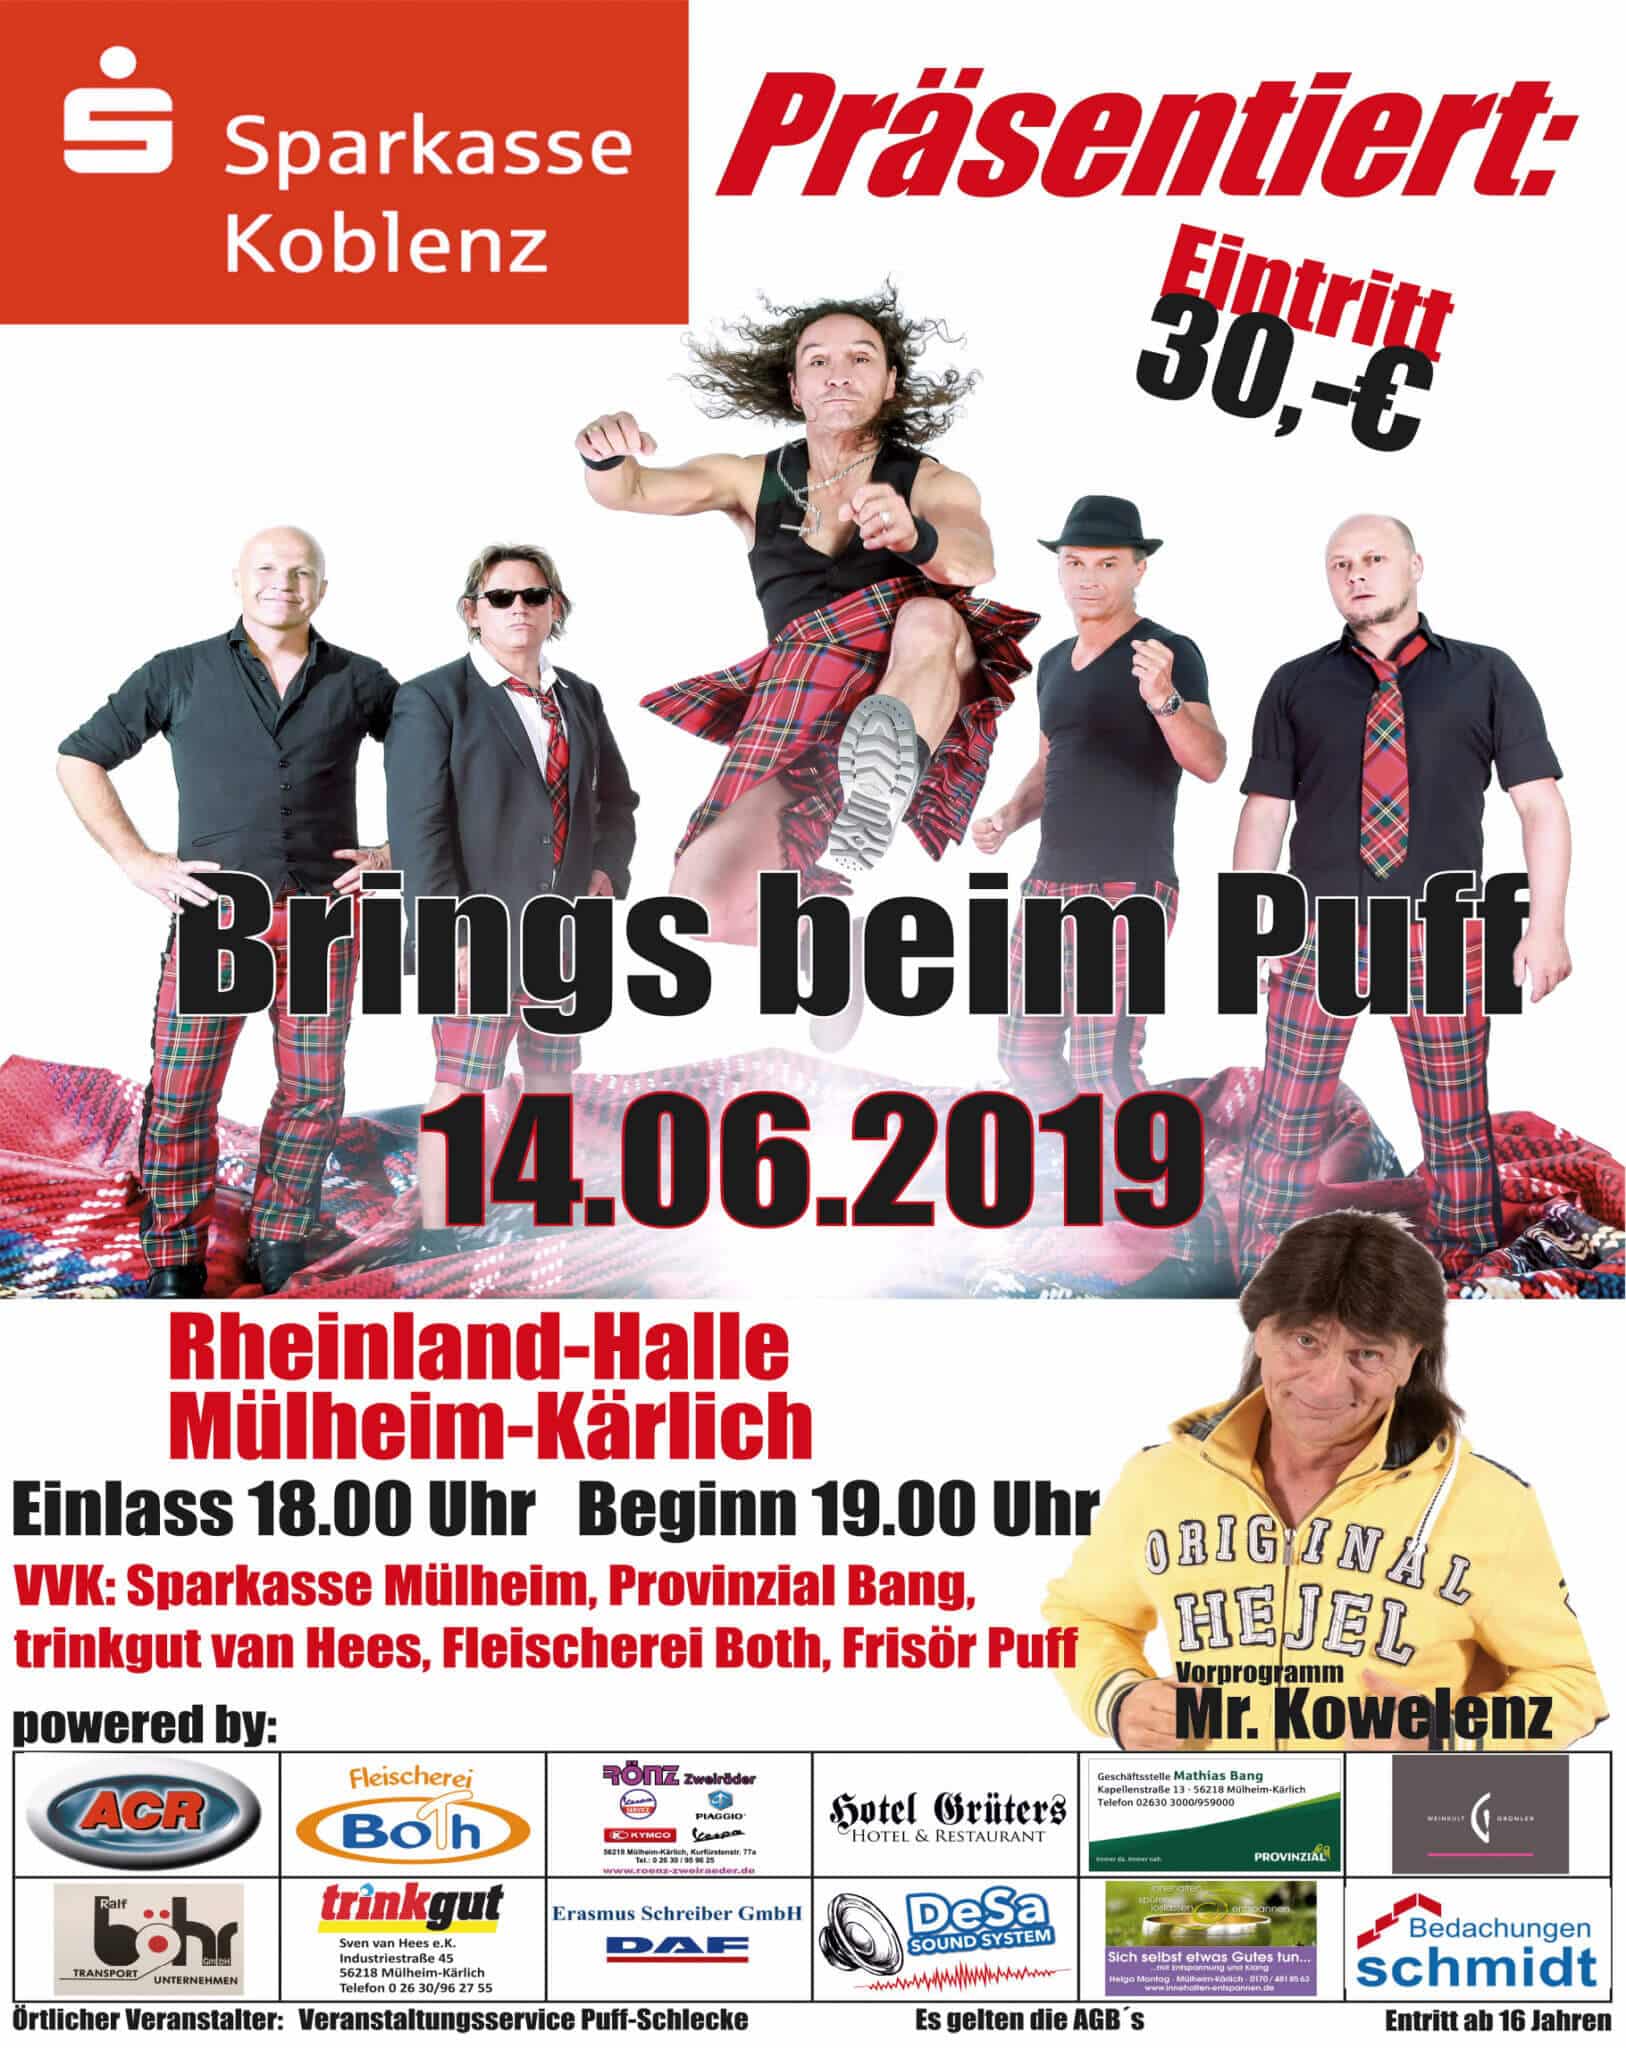 Brings in Mülheim-Kärlich, Plakat 2019